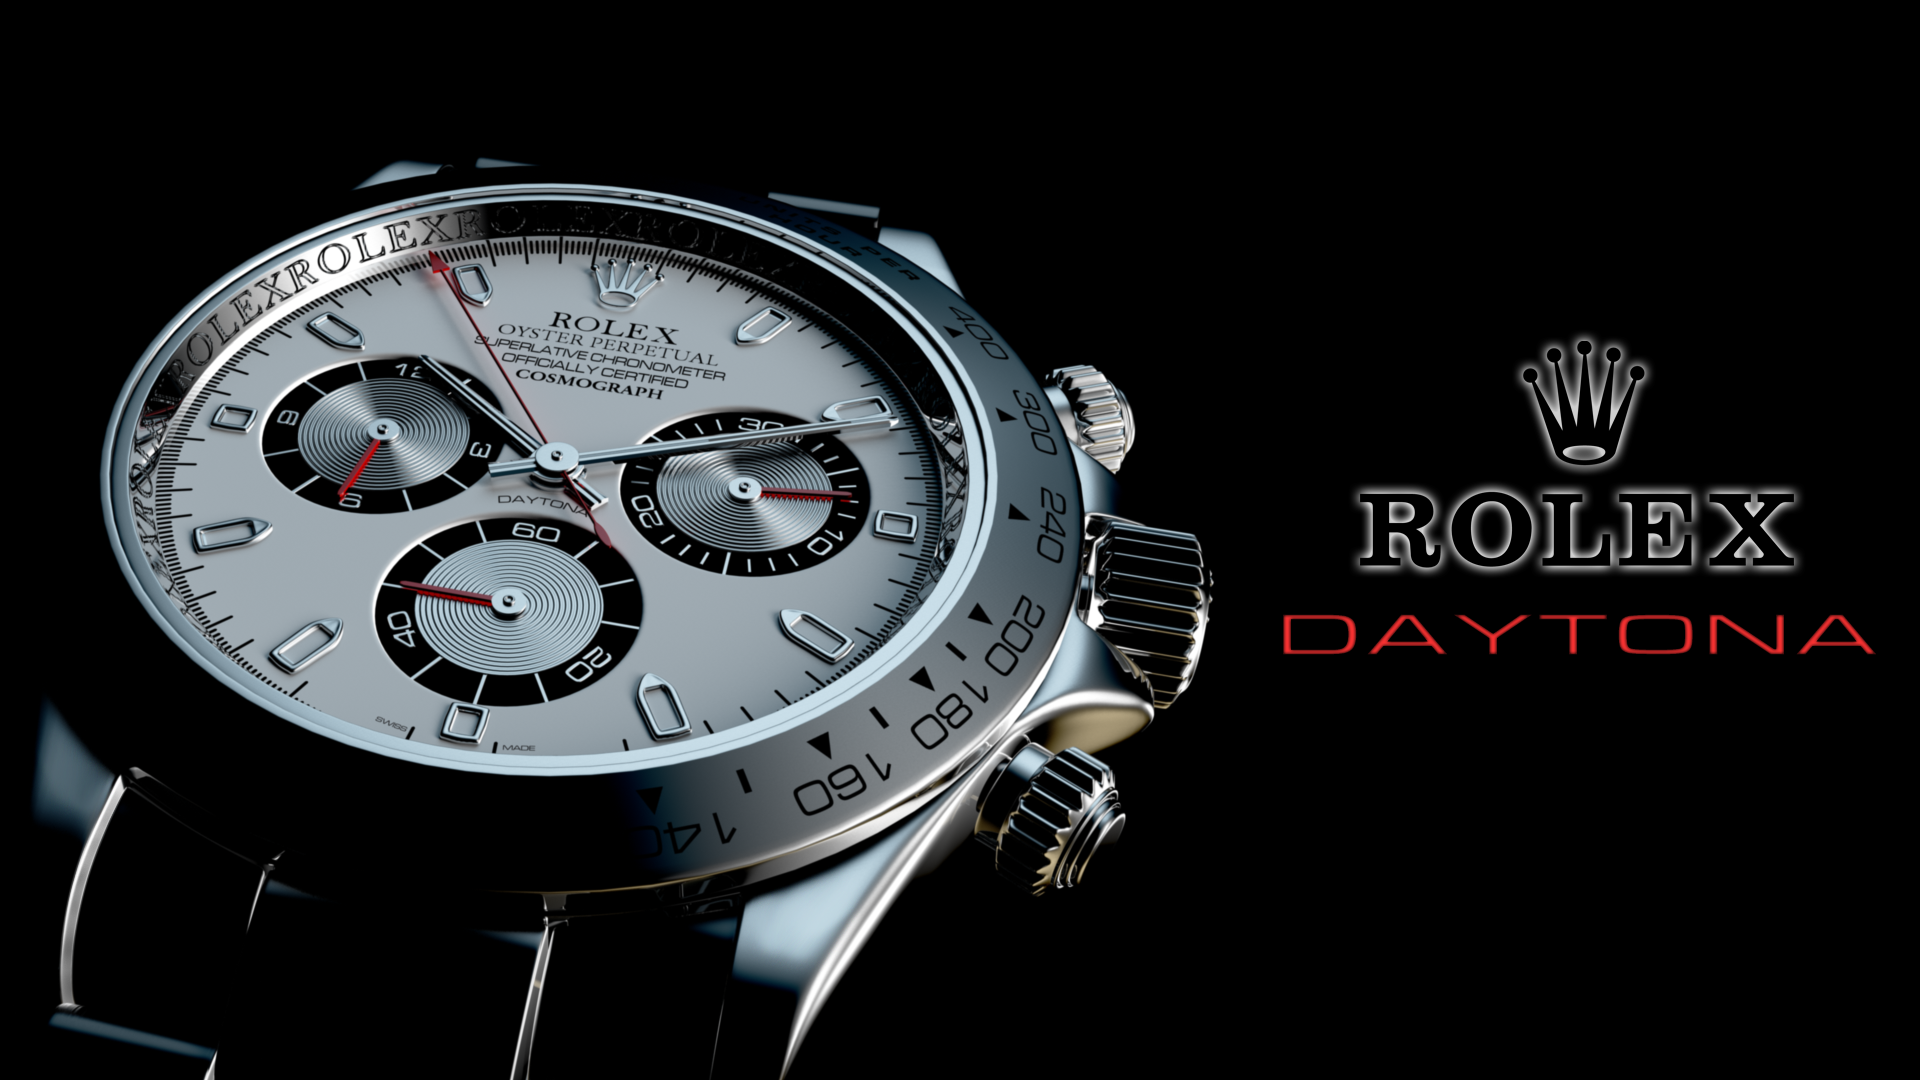 Rolex Daytona By Lolstar13337